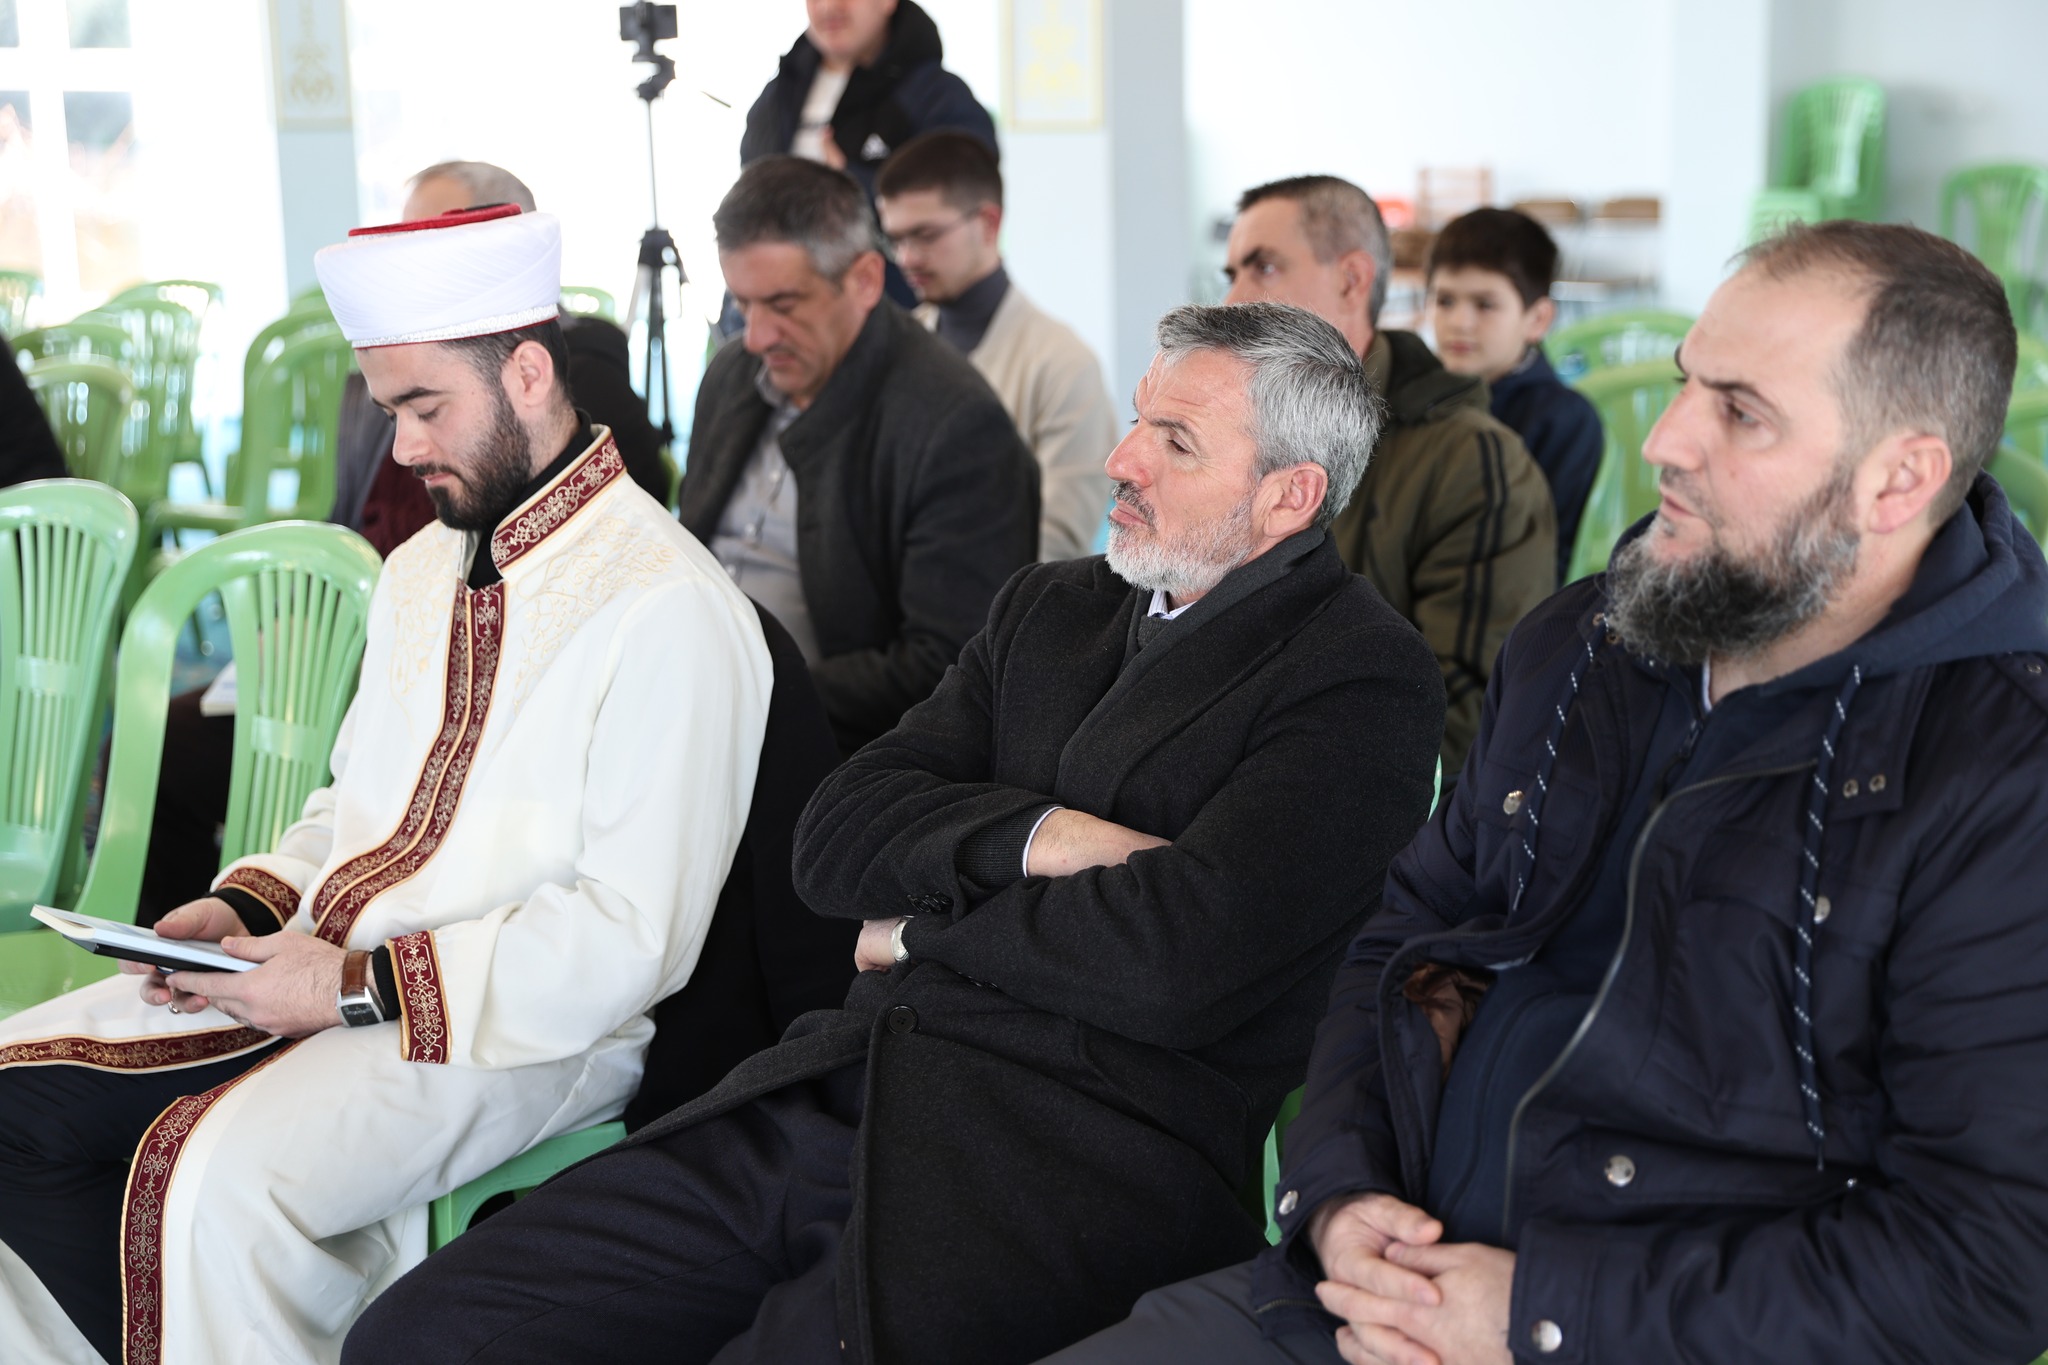 Zhvillohet konferenca e 12-të vjetore e imamëve: “Njeriu, bartës i amanetit!”